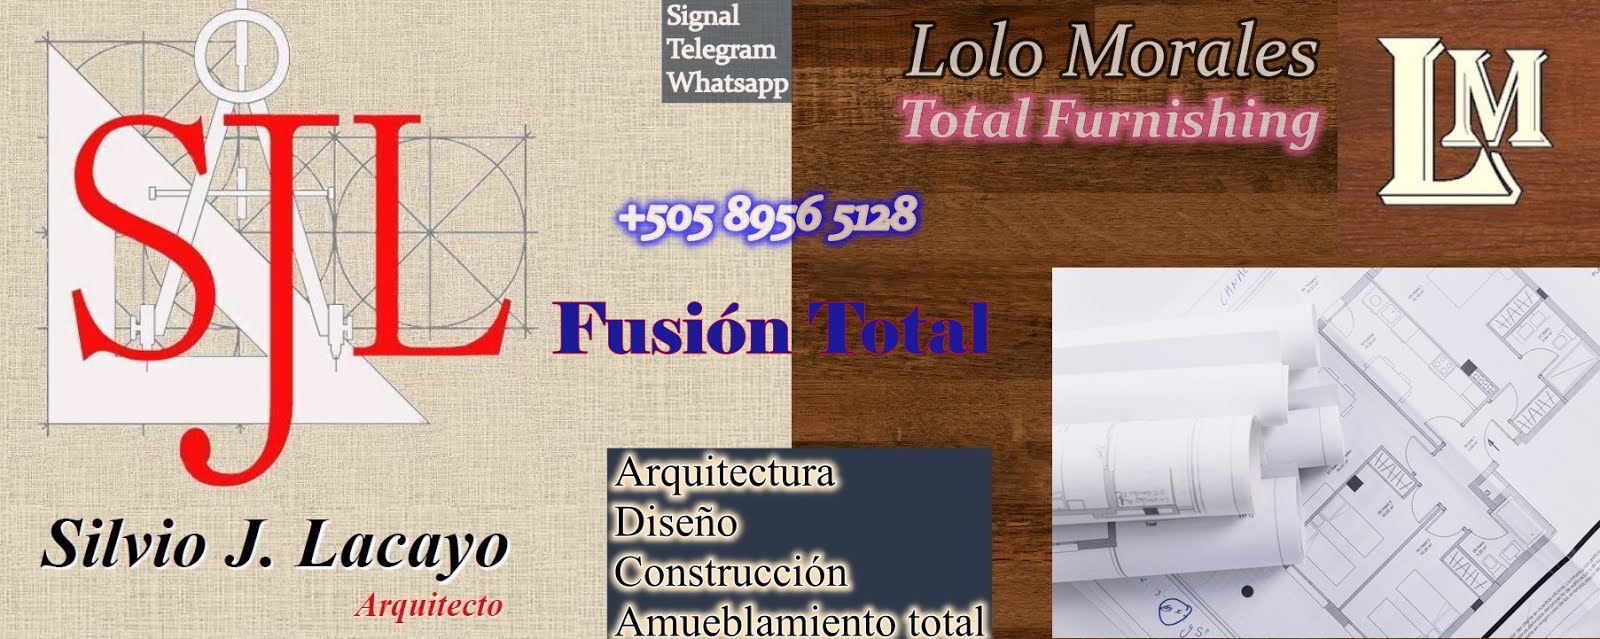 Silvio J. Lacayo | Arquitecto